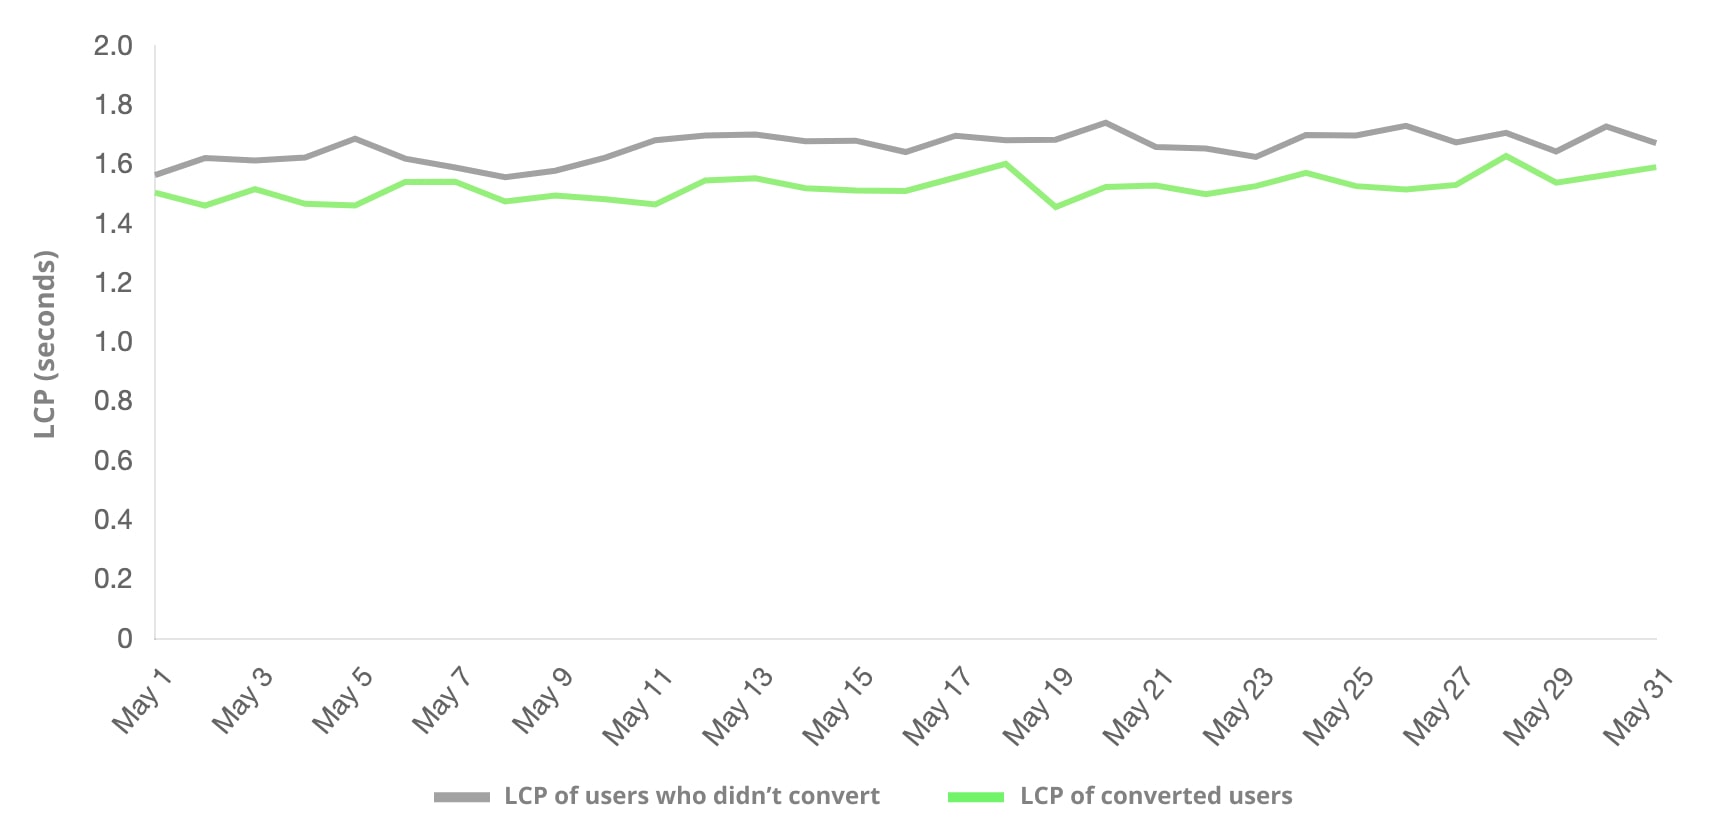 Porównanie użytkowników, którzy dokonali konwersji, z tymi, którzy jej nie dokonali. W grupie użytkowników, którzy częściej dokonali konwersji, wskaźnik LCP był niższy.